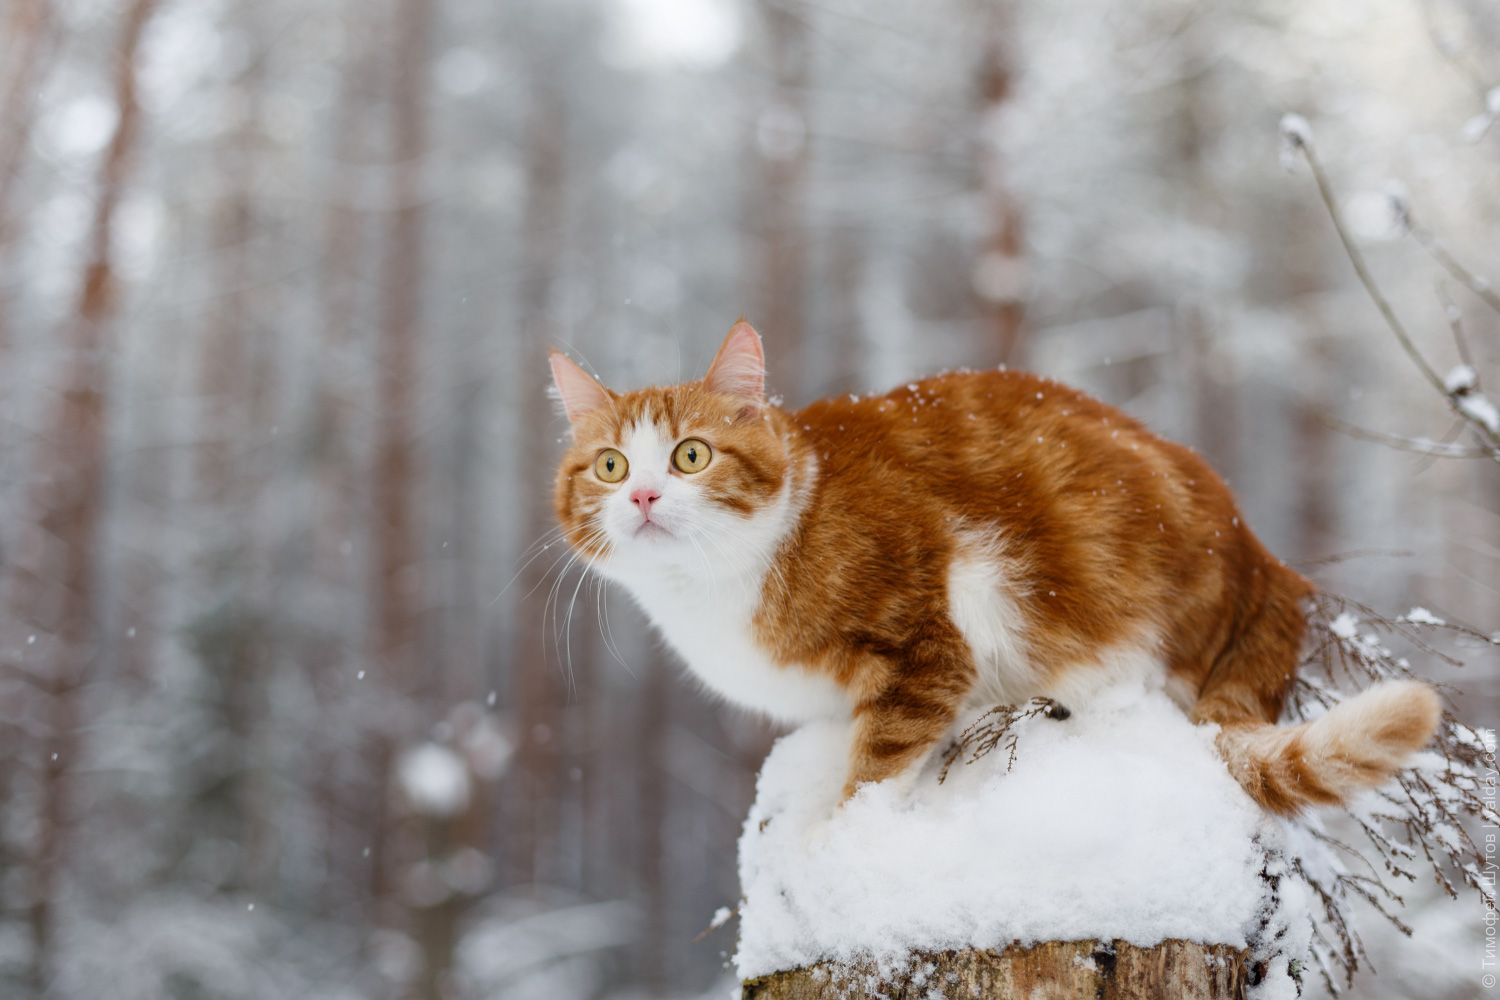 Скачать обои бесплатно Животные, Зима, Снег, Кошка картинка на рабочий стол ПК